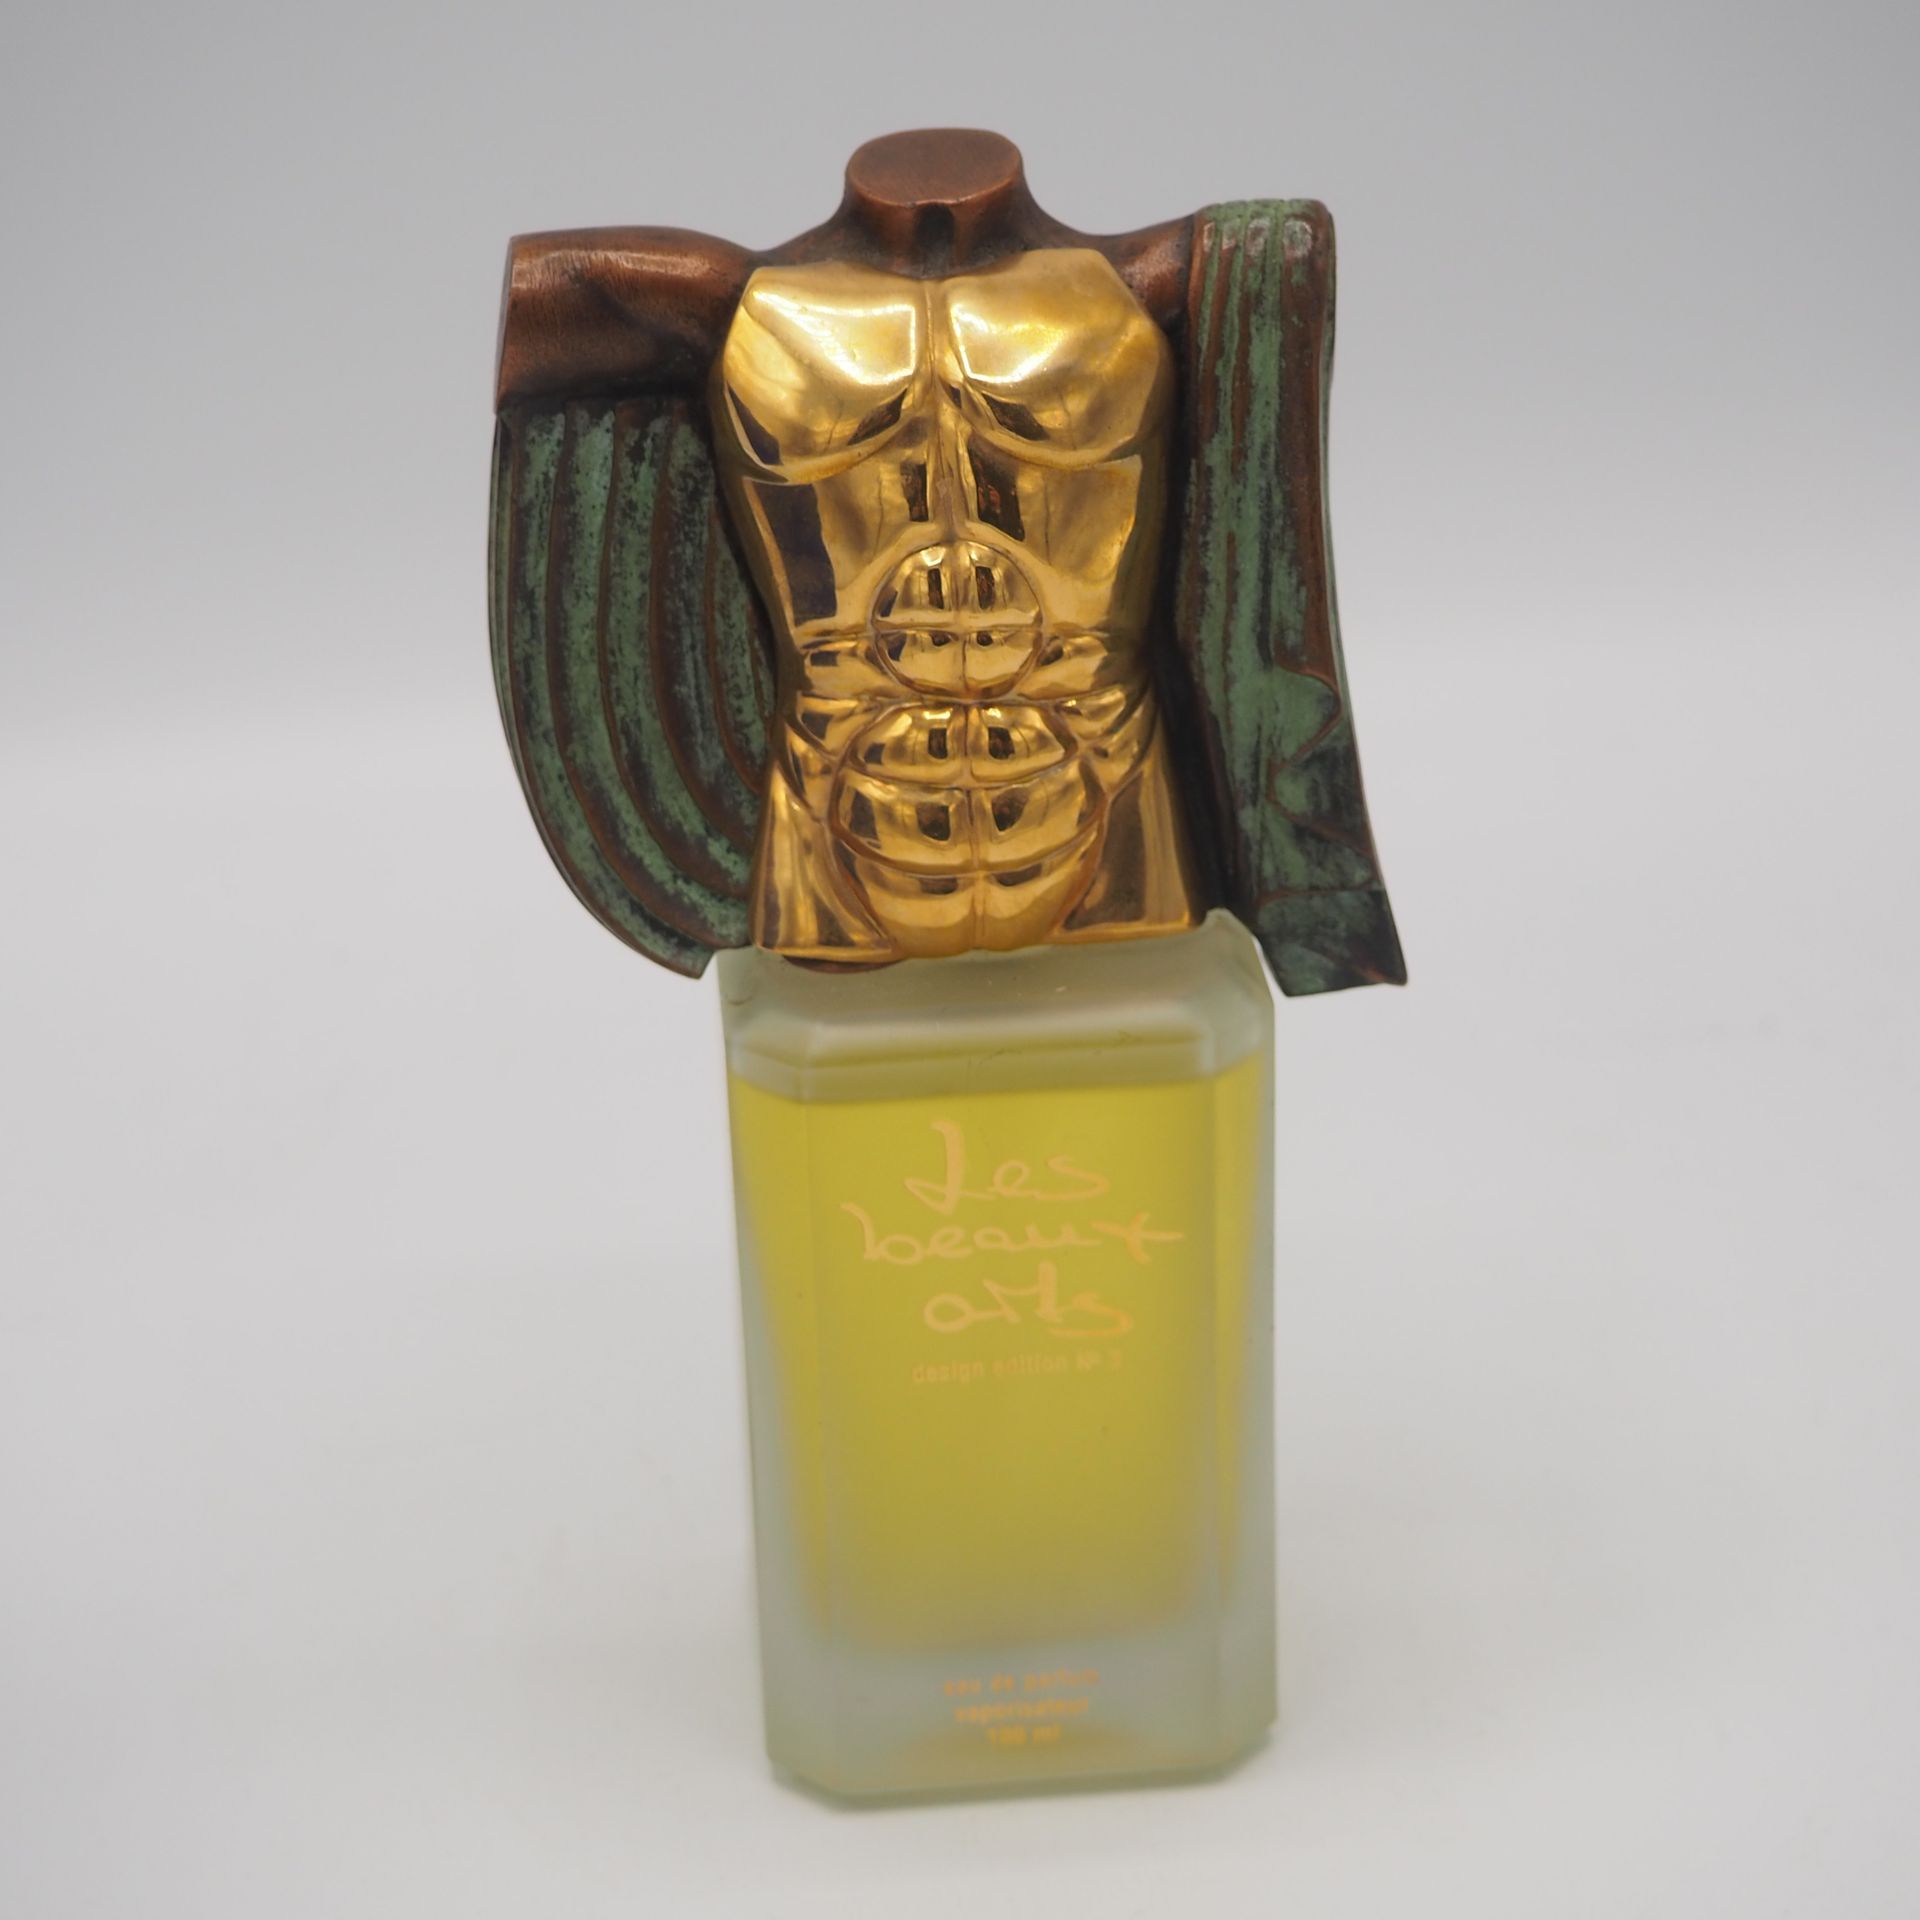 Miguel Ortiz Berrocal Miguel Ortiz Berrocal: Frasco de perfume, "les beaux arts"&hellip;